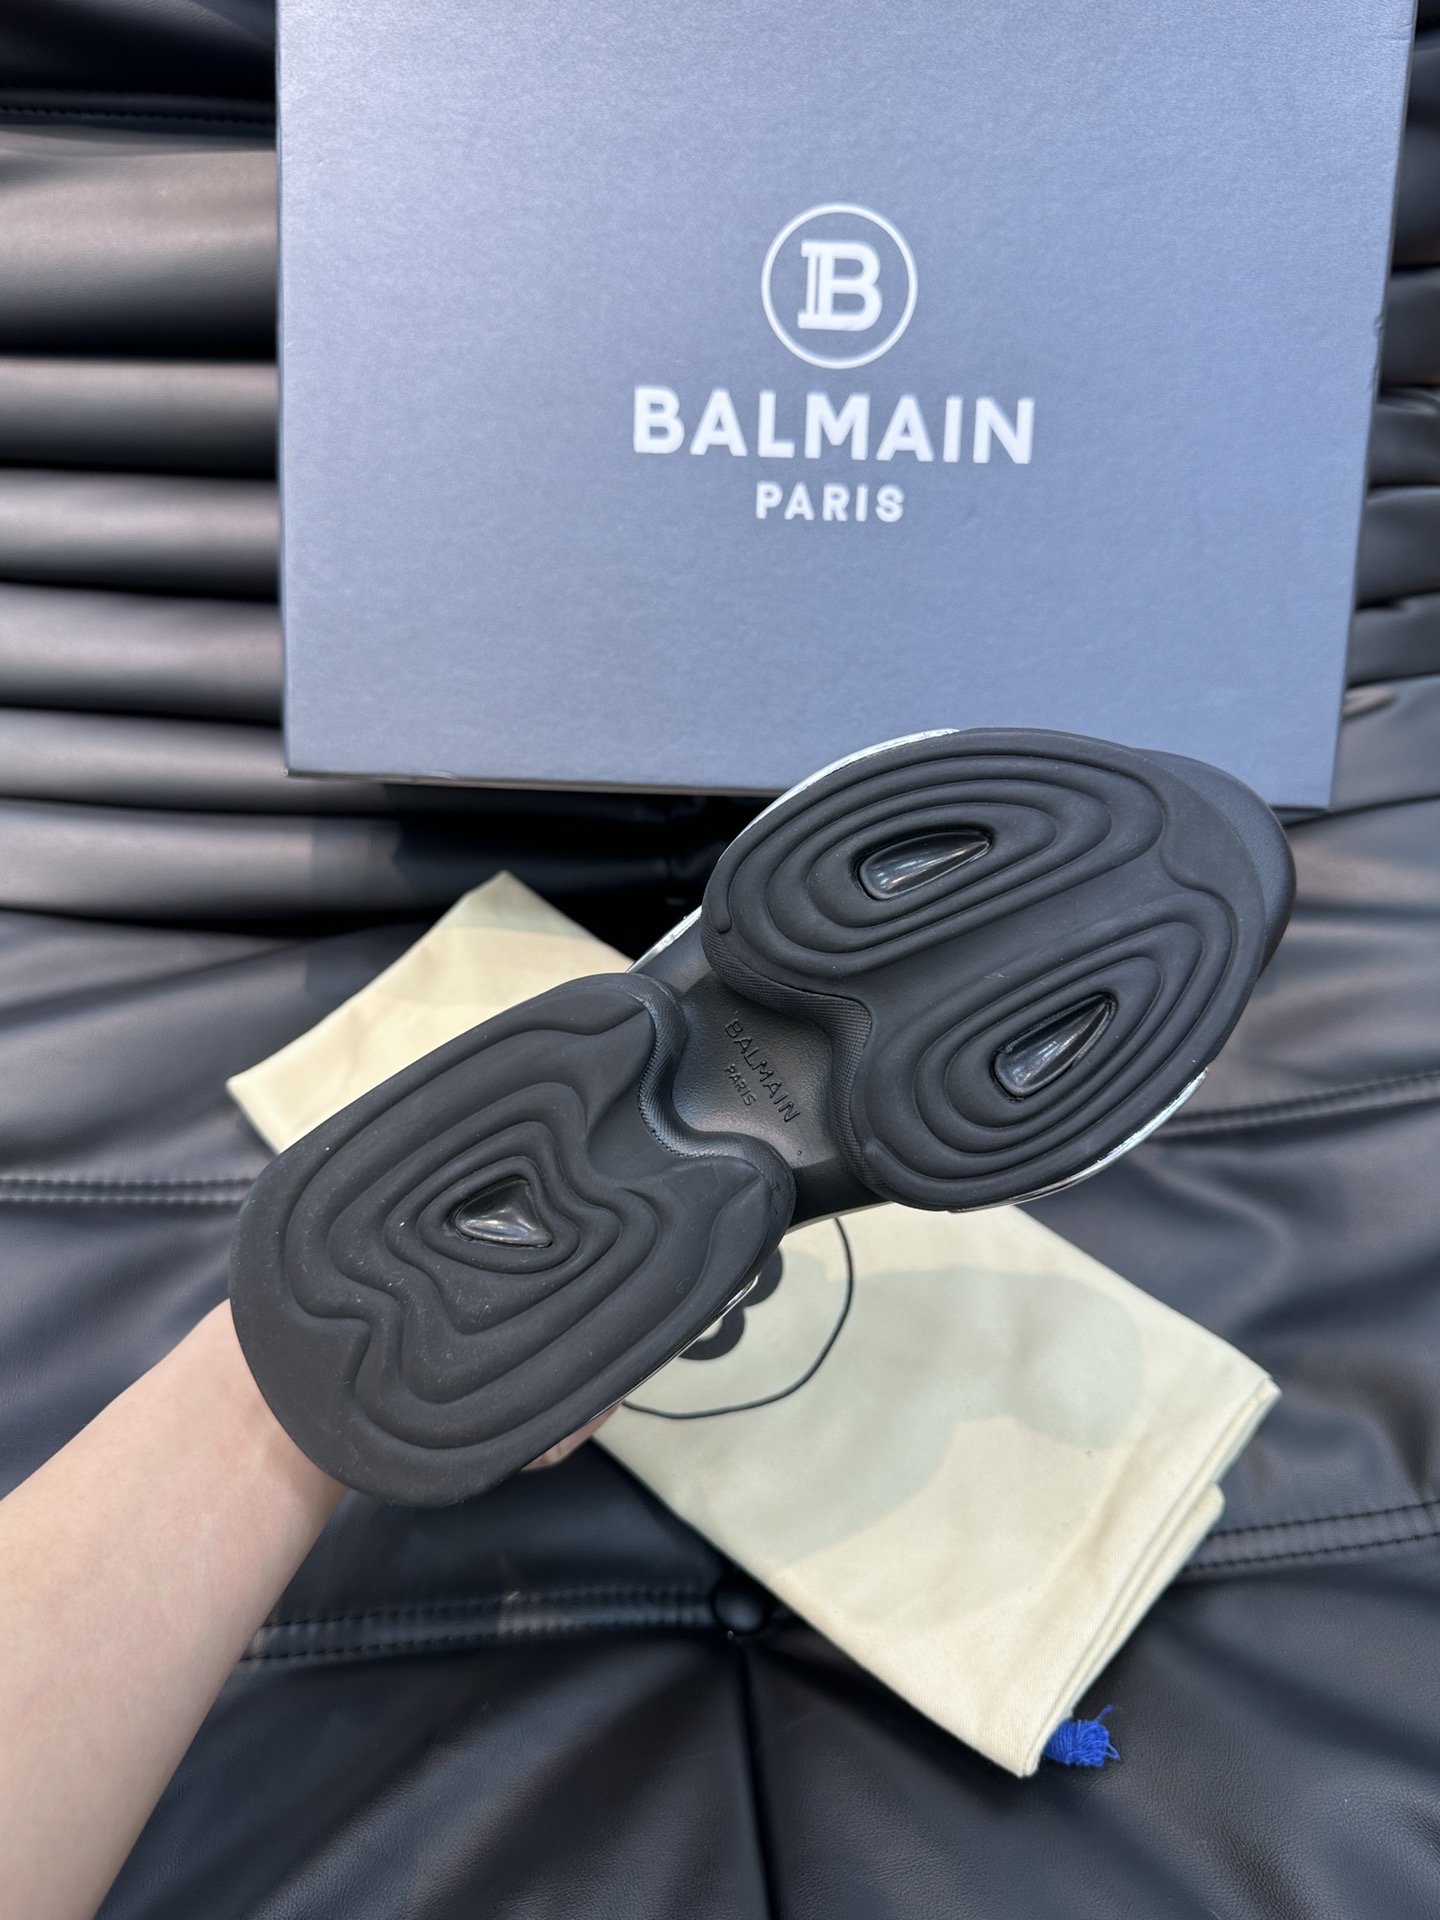 BALMAIN巴尔曼超酷情侣款太空鞋造型太帅了增高8CM妥妥的气场全开！设计师以神话的生物独角兽为灵感创